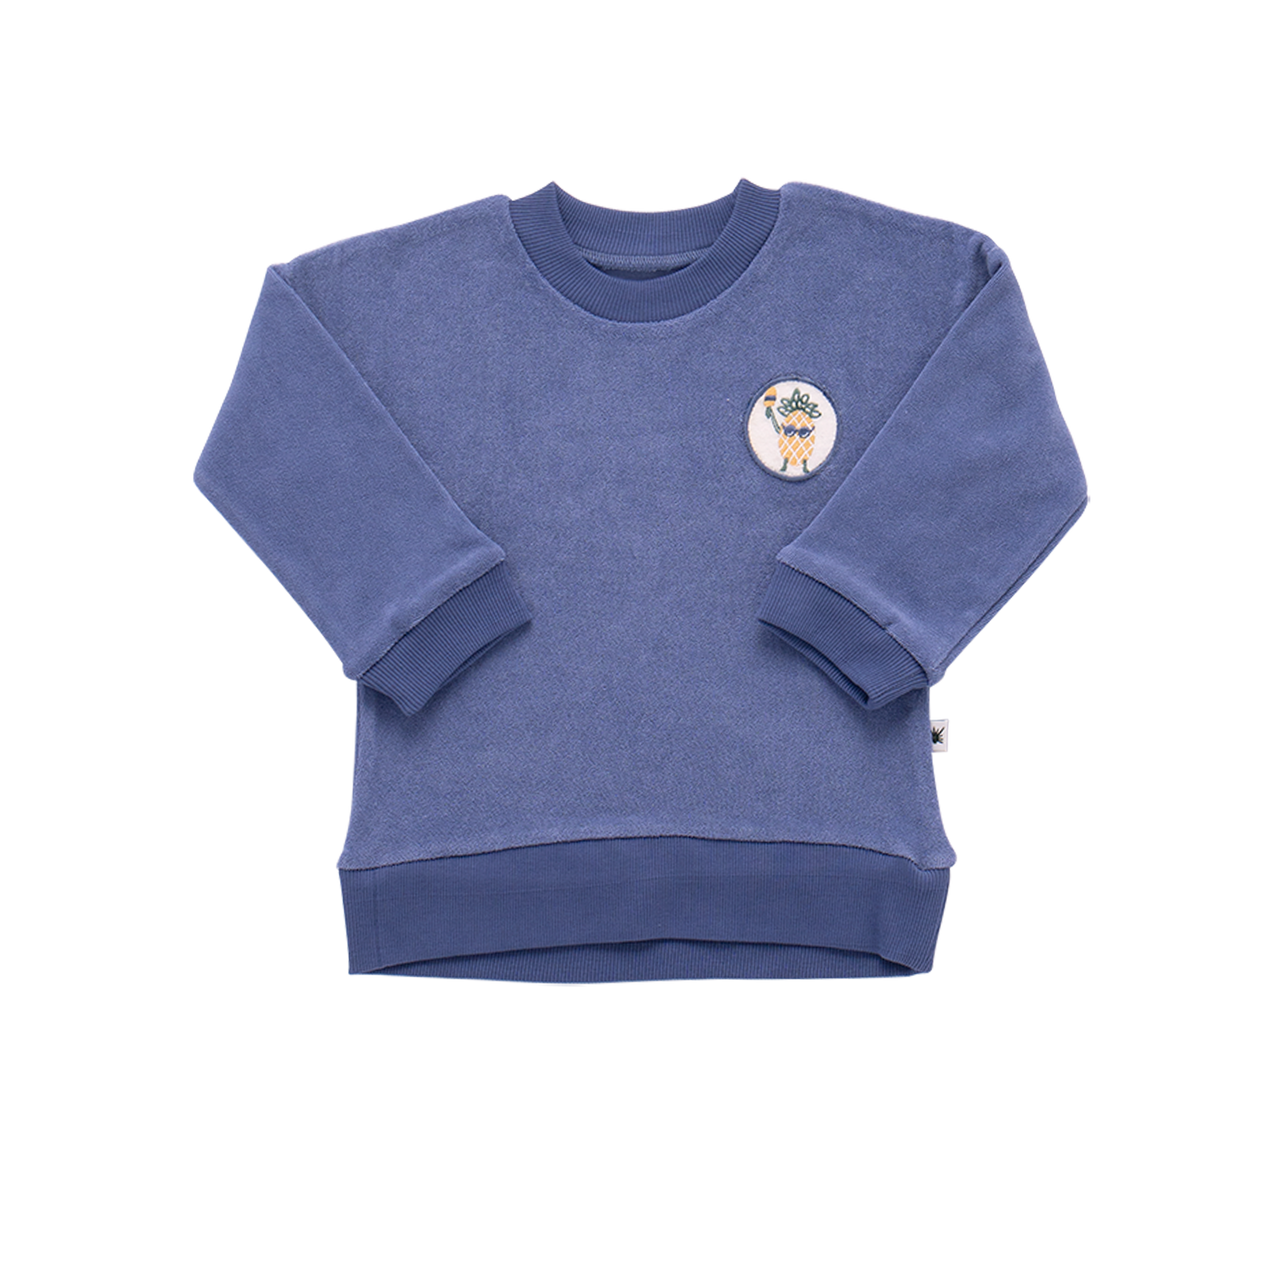 "Grow" Terry Towel Sweatshirt - Lavender Blue